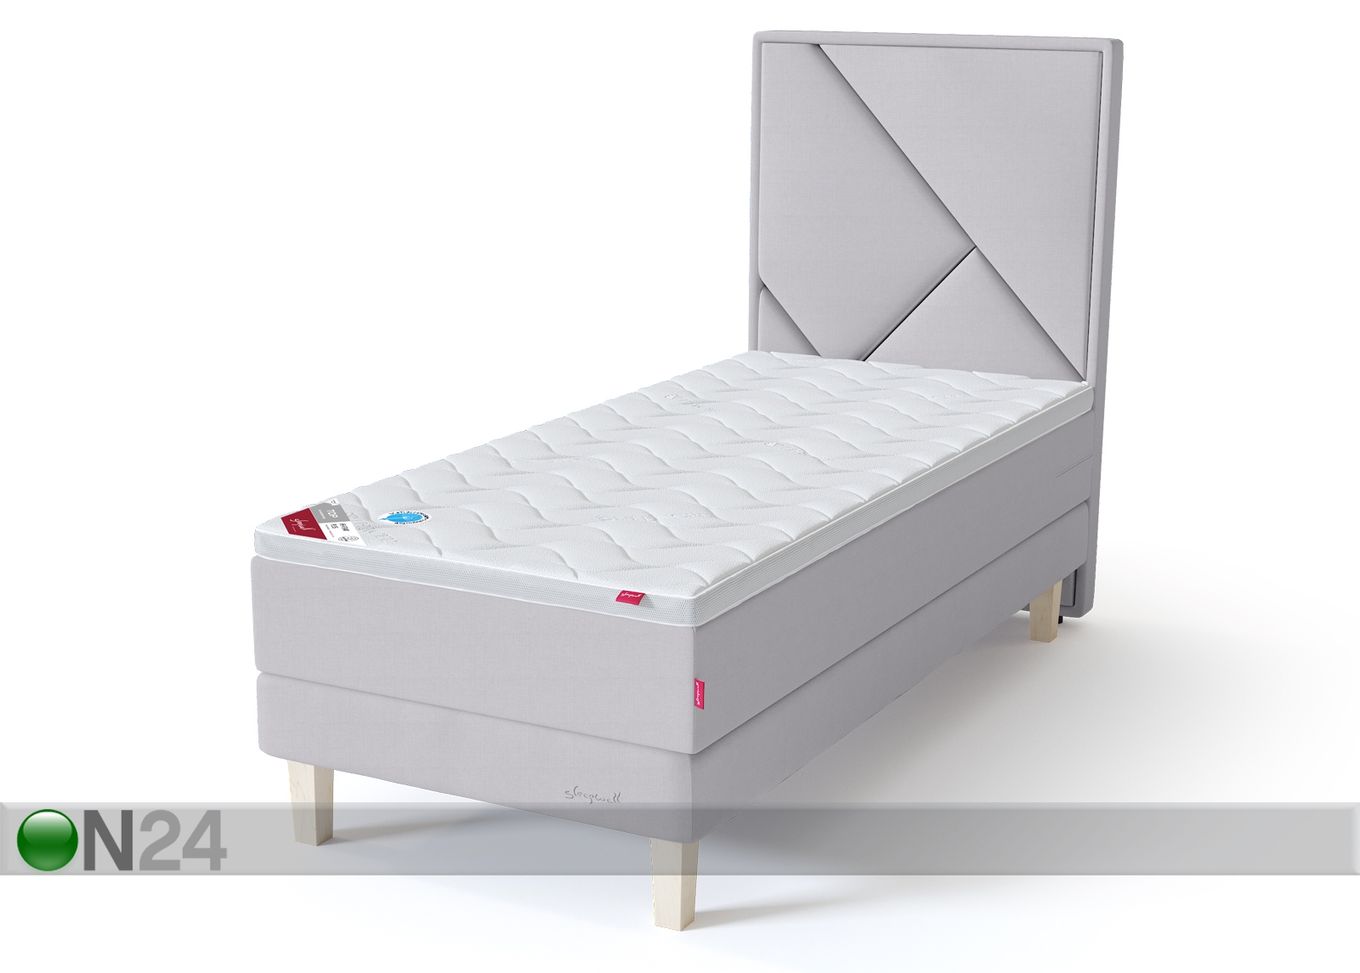 Sleepwell Red континентальная кровать на раме жёсткая 90x200 cm увеличить